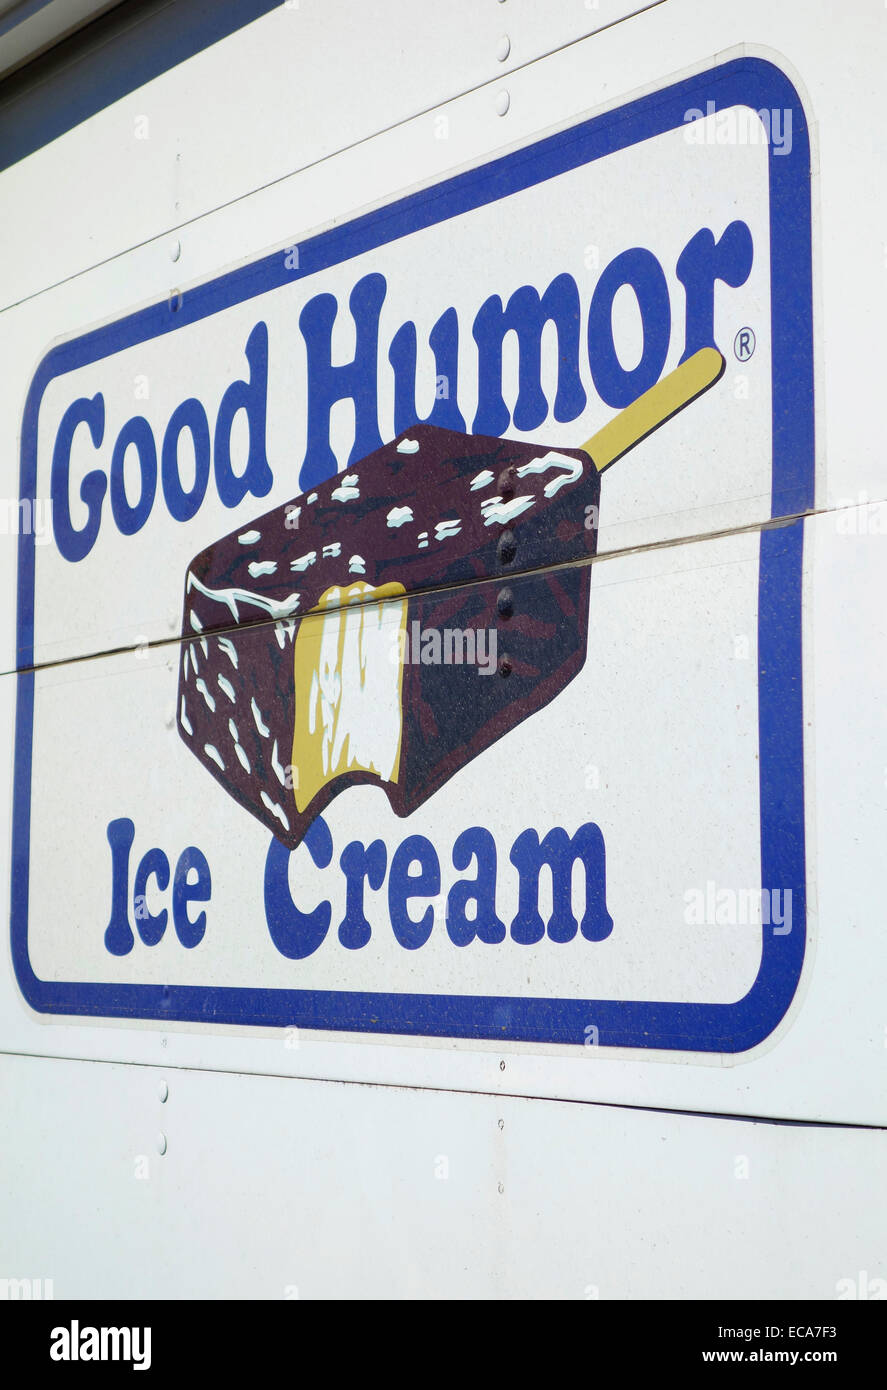 L'humour camion de crème glacée à Montauk long island Banque D'Images